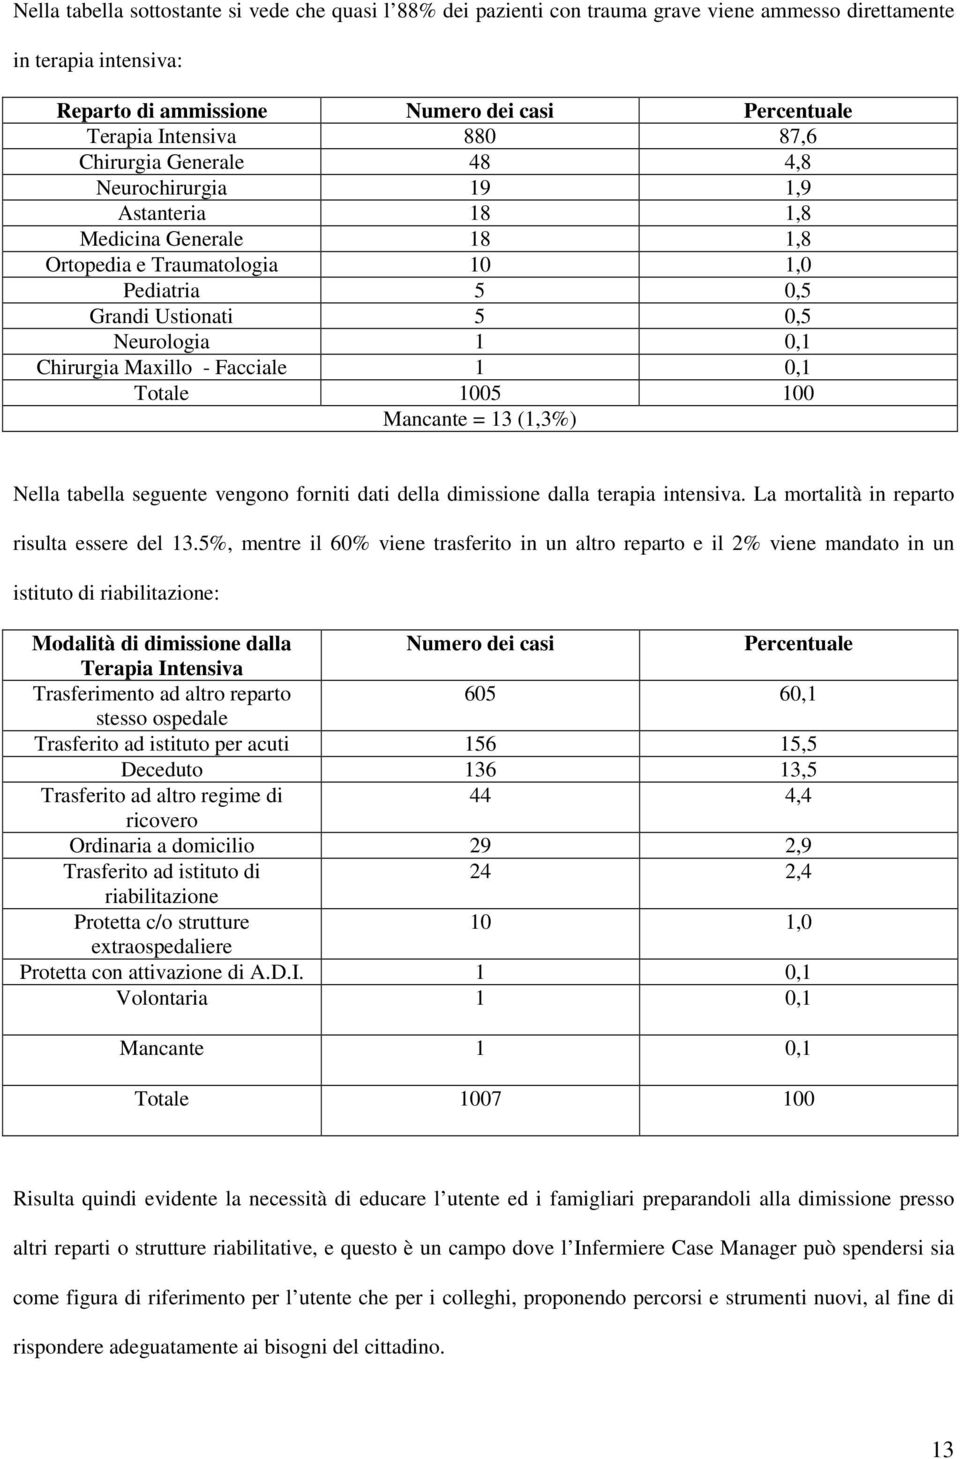 Maxillo - Facciale 1 0,1 Totale 1005 100 Mancante = 13 (1,3%) Nella tabella seguente vengono forniti dati della dimissione dalla terapia intensiva. La mortalità in reparto risulta essere del 13.